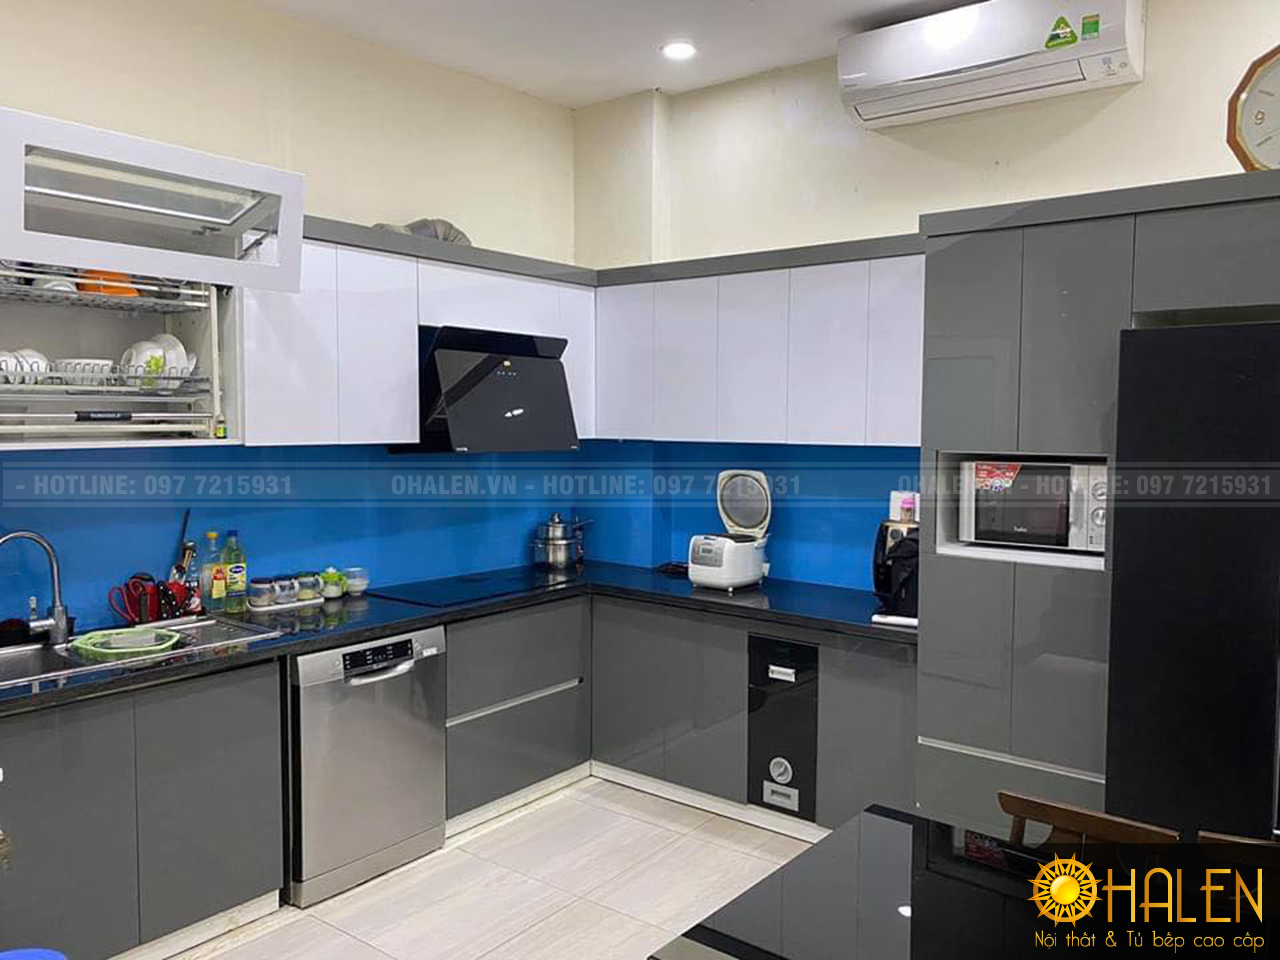 Tủ bếp kính màu xanh dương nổi bật và là điểm nhấn của không gian bếp